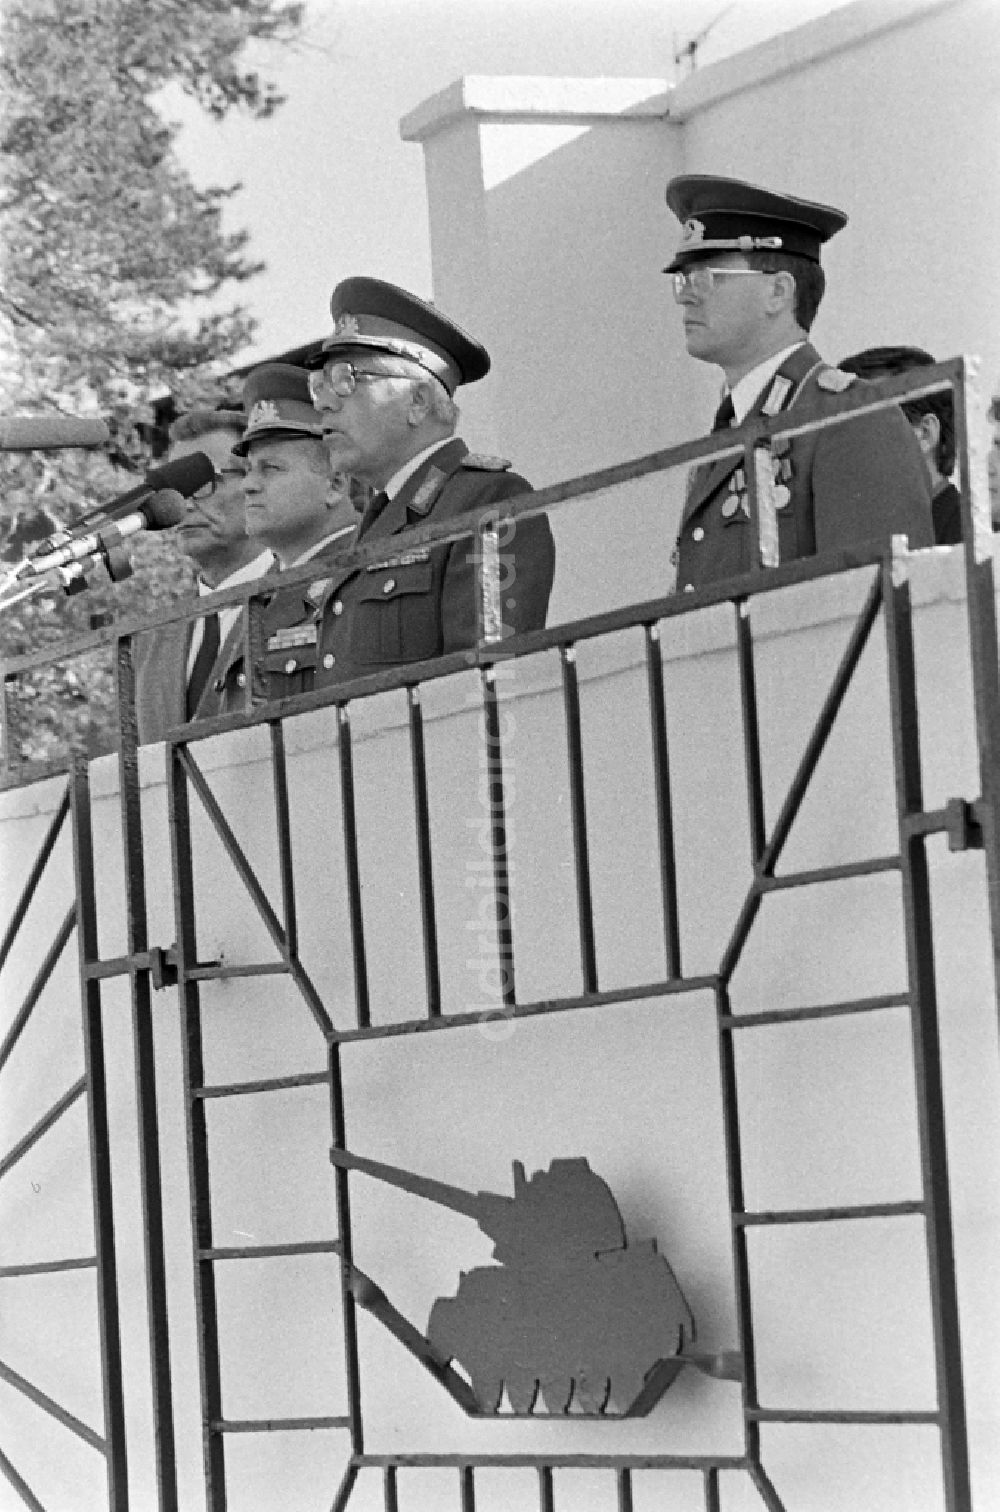 Goldberg: Auflösung des Panzerregiment 8 (PR-8) in Goldberg in Mecklenburg-Vorpommern in der DDR